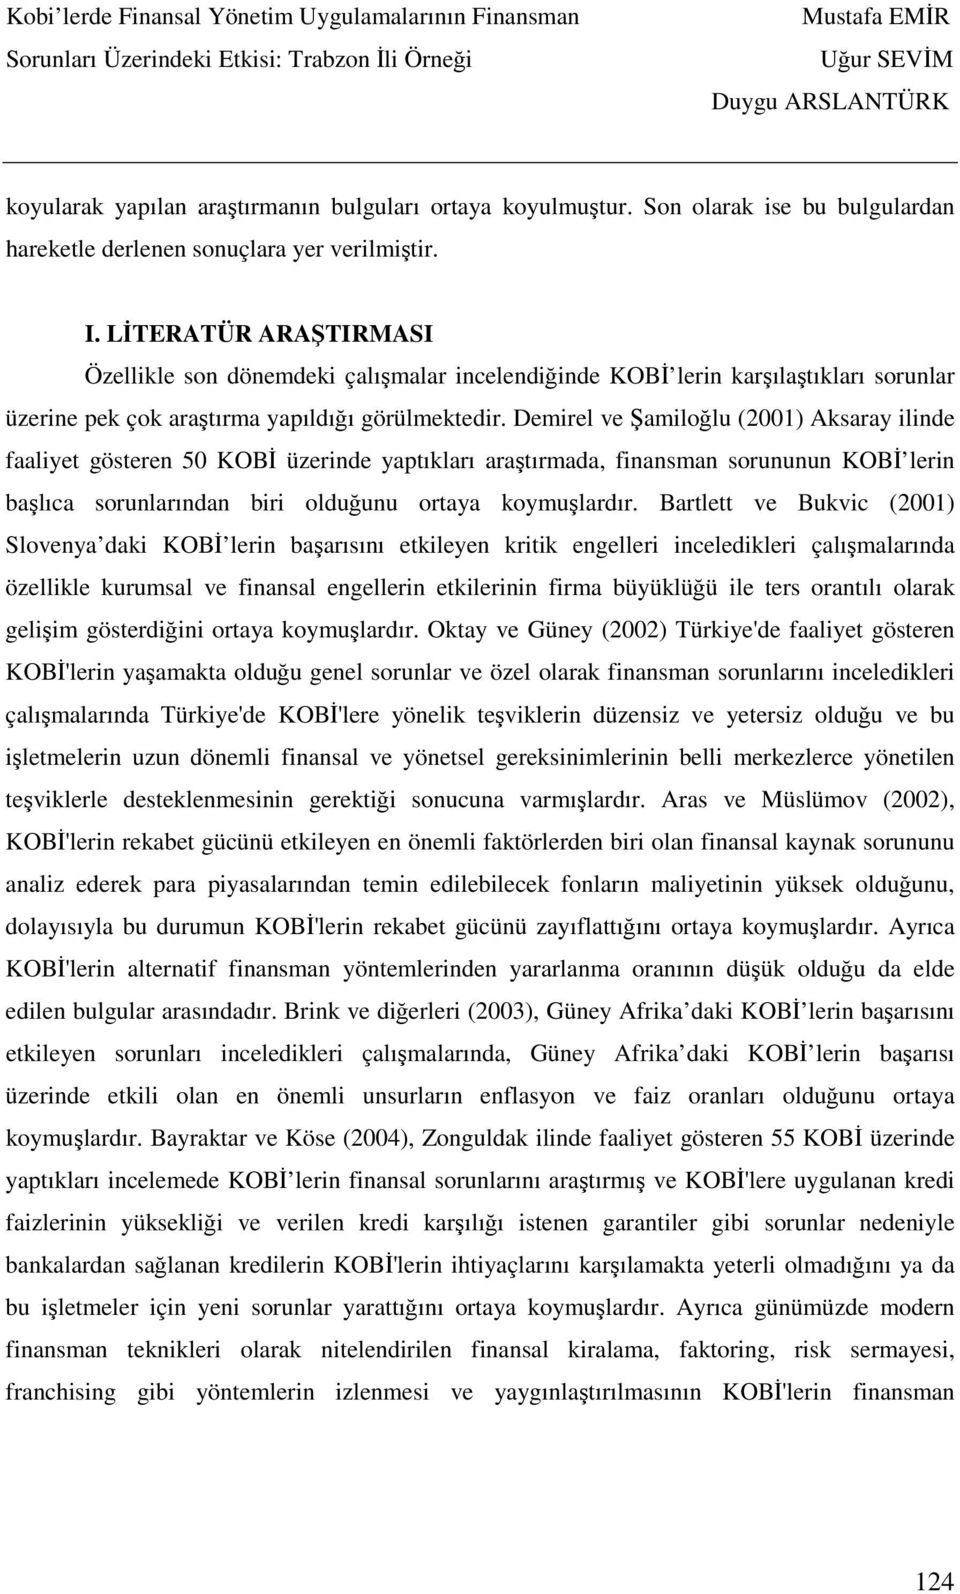 Demirel ve Şamiloğlu (2001) Aksaray ilinde faaliyet gösteren 50 KOBİ üzerinde yaptıkları araştırmada, finansman sorununun KOBİ lerin başlıca sorunlarından biri olduğunu ortaya koymuşlardır.